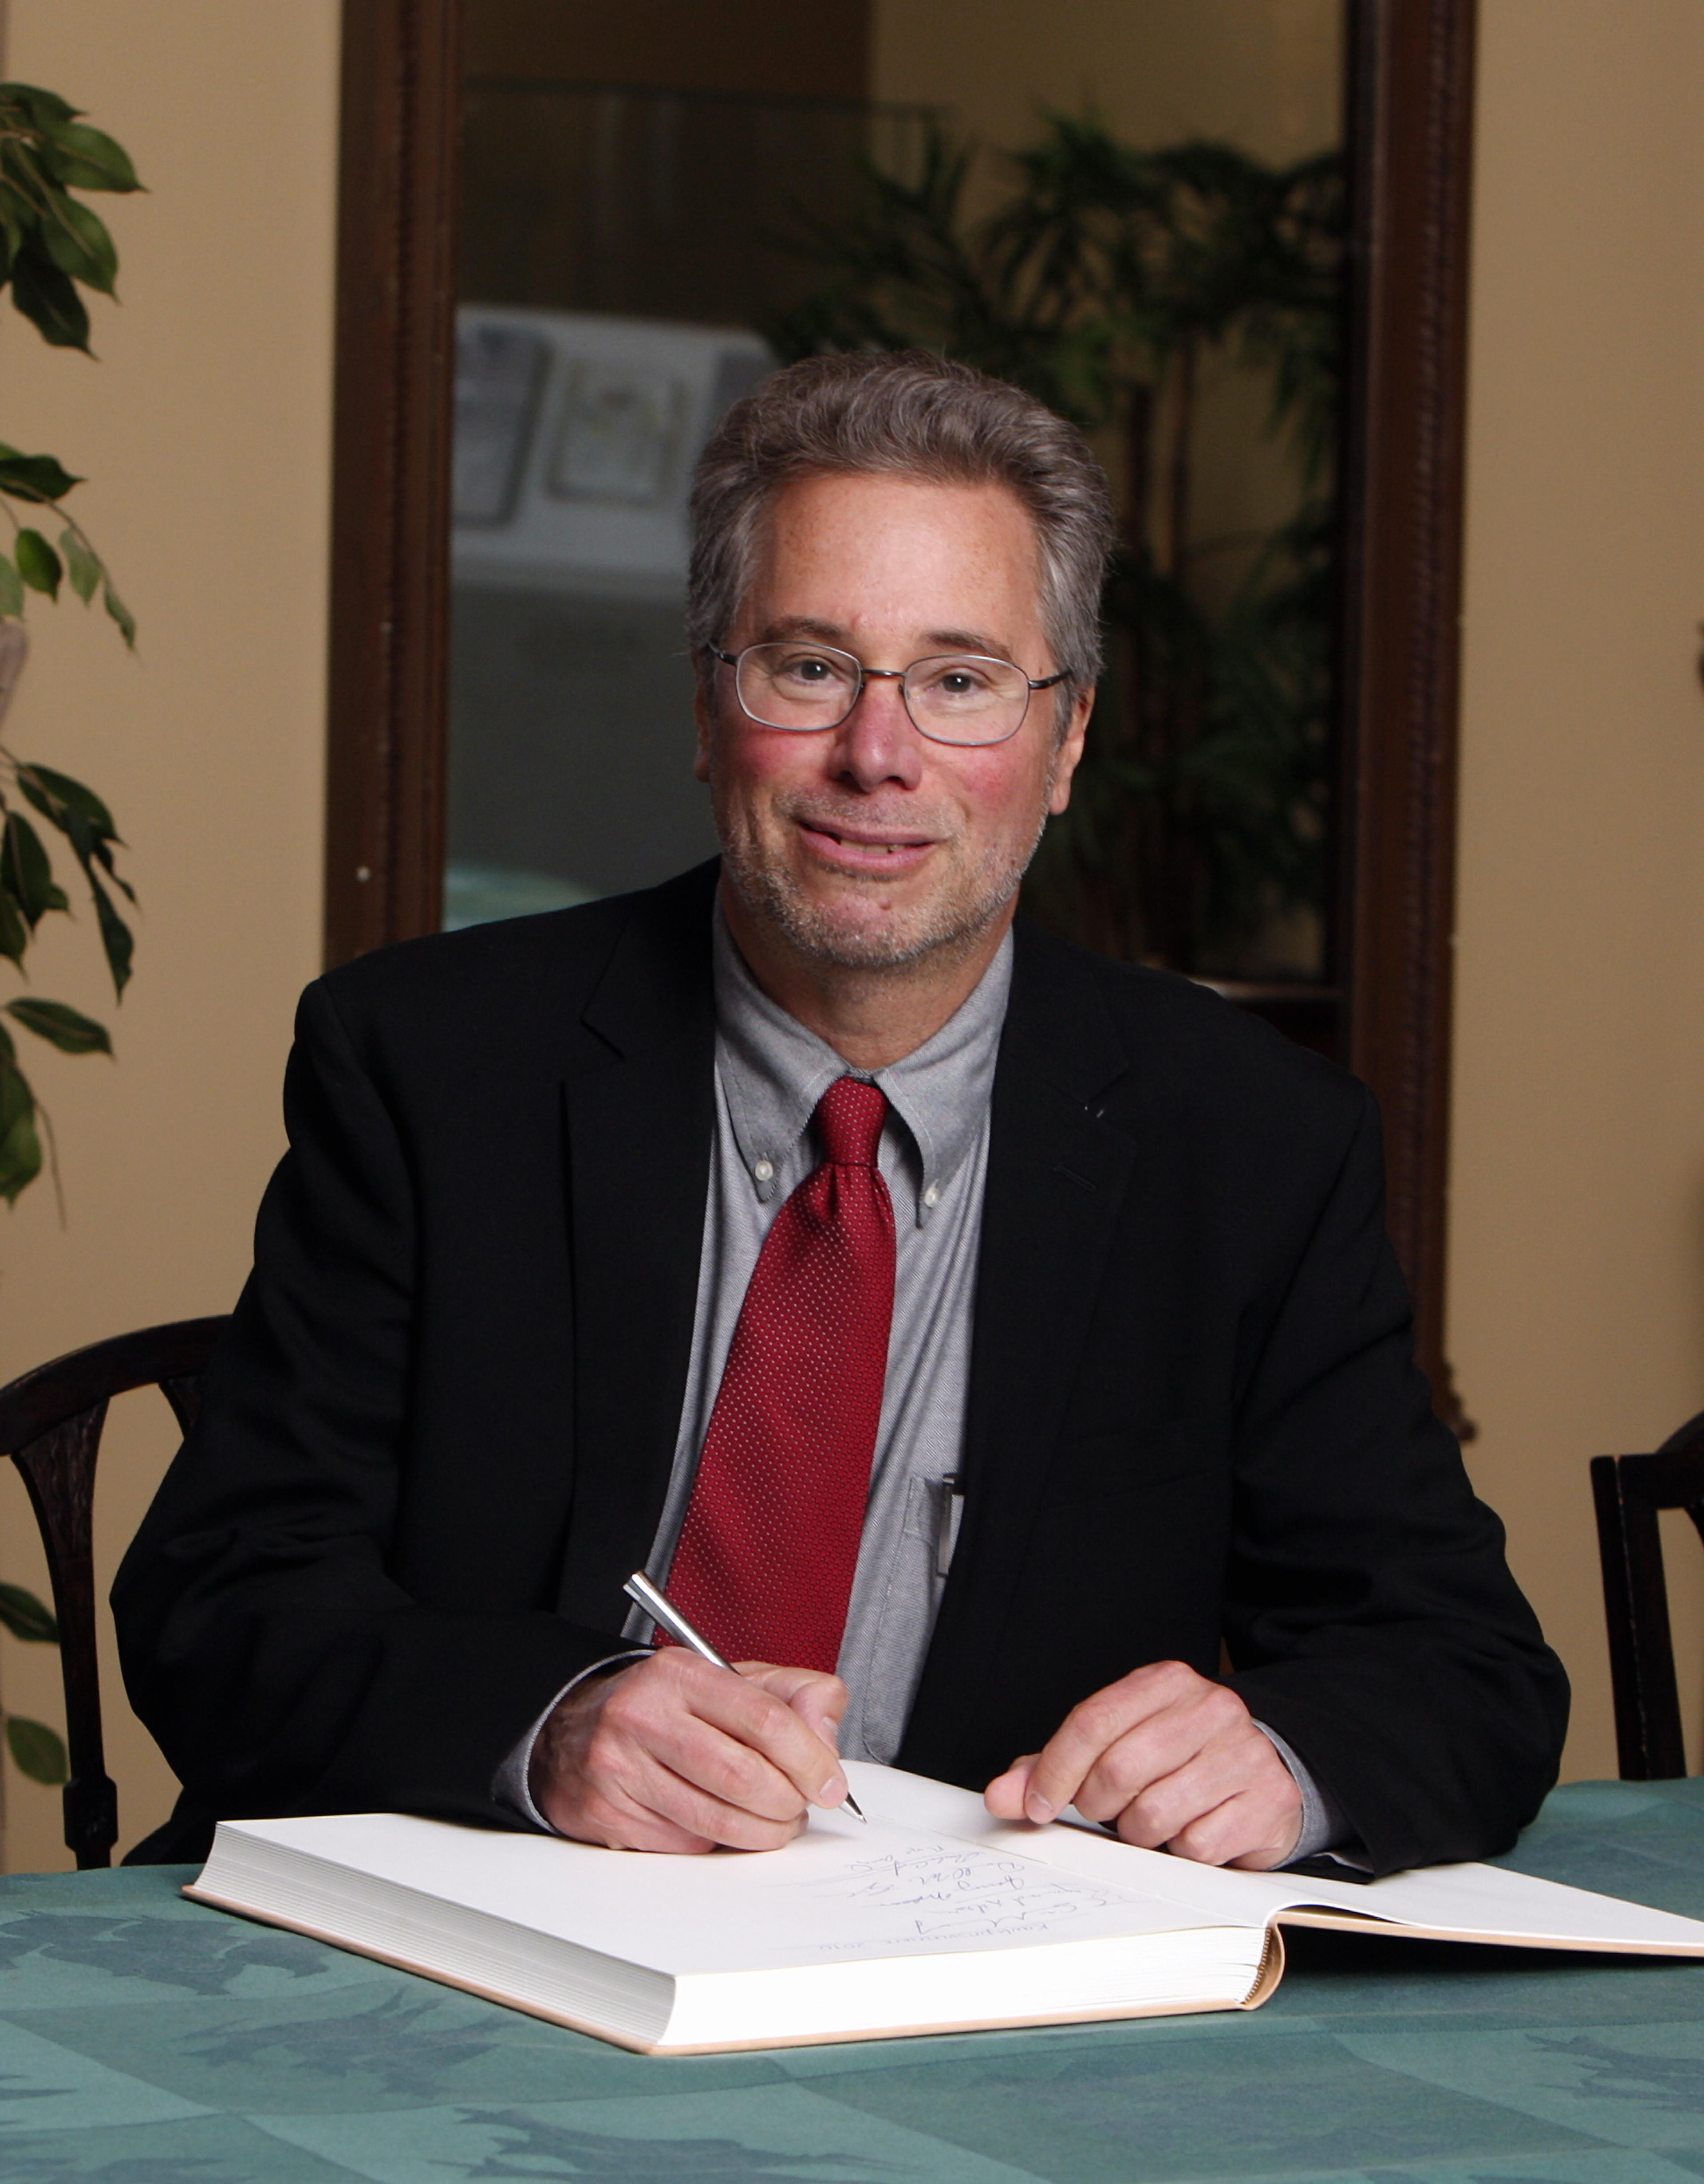 Richard H. Scheller signing the guest book